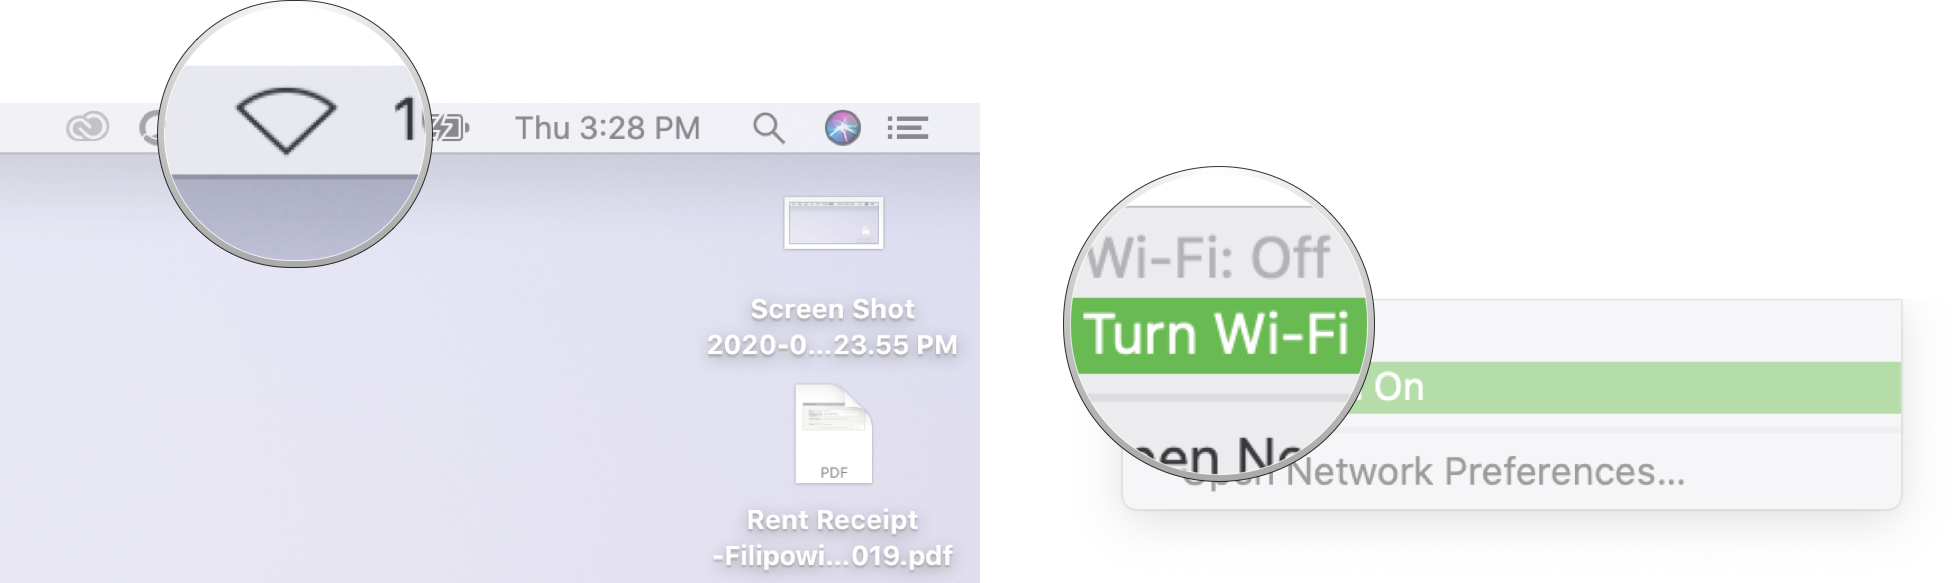 Turn Wi-Fi on on Mac: Click the Wi-Fi symbol in the menu bar, then click Turn Wi-Fi on